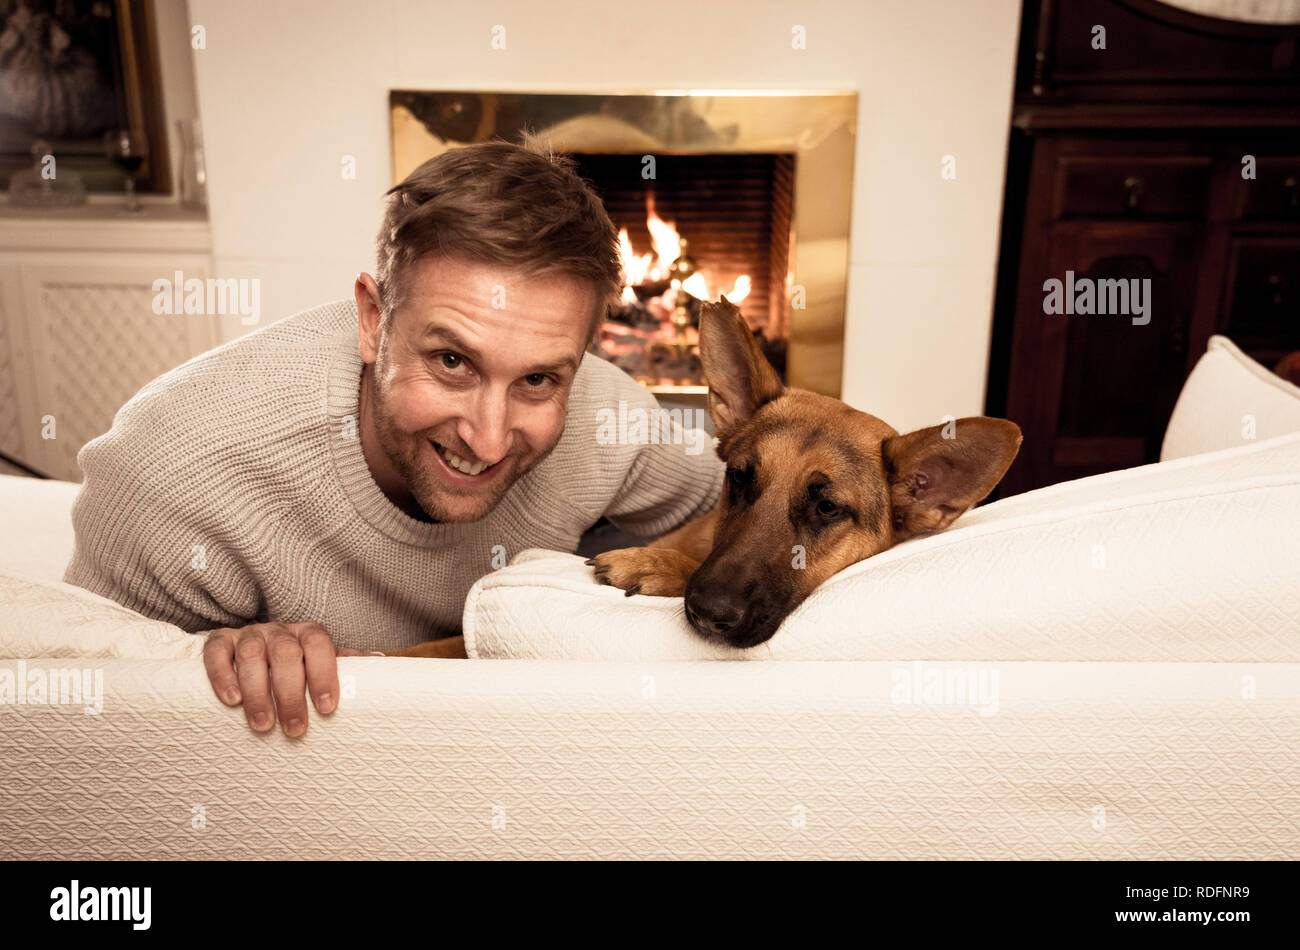 Bel ritratto di uomo sorridente abbracciando il cane pastore tedesco giocando insieme davanti al camino a casa accogliente in giornata invernale in felicità Friendshi Foto Stock